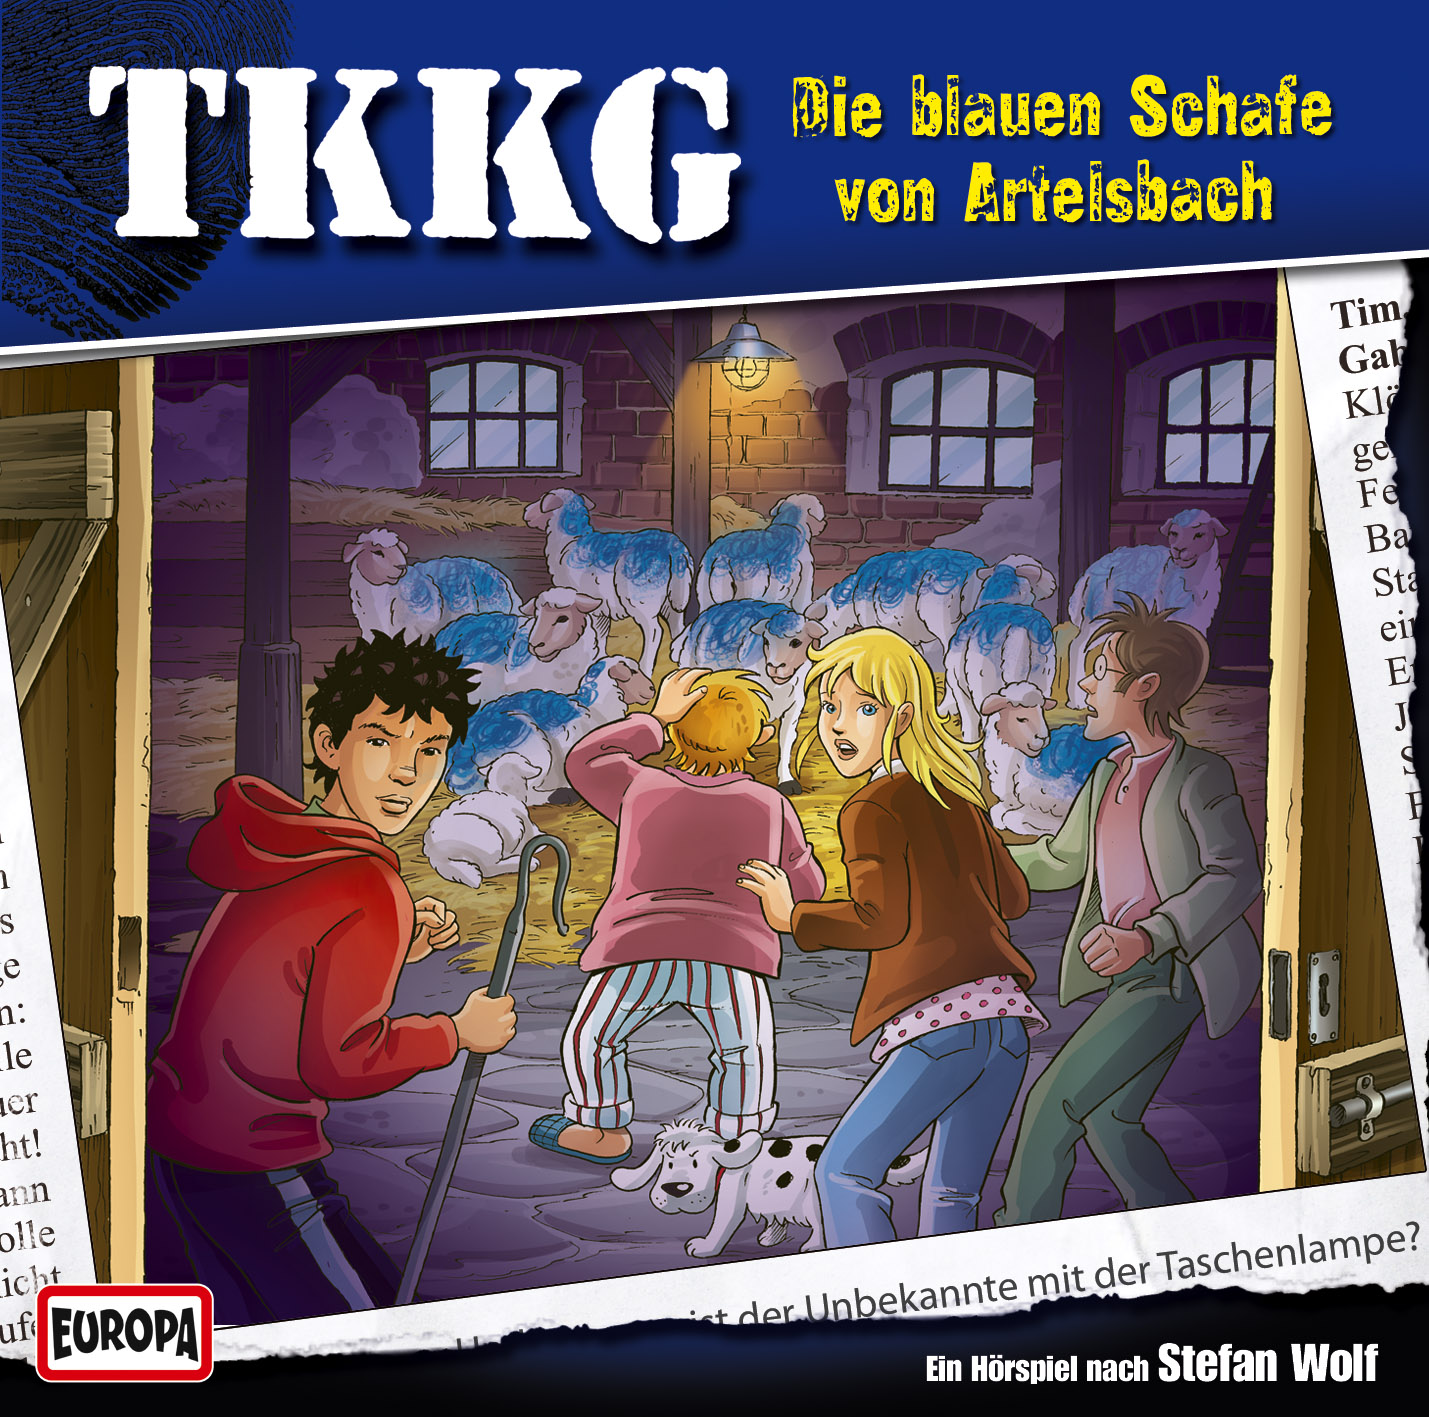 TKKG Hörspiel-Folge 188: Die blauen Schafe von Artelsbach